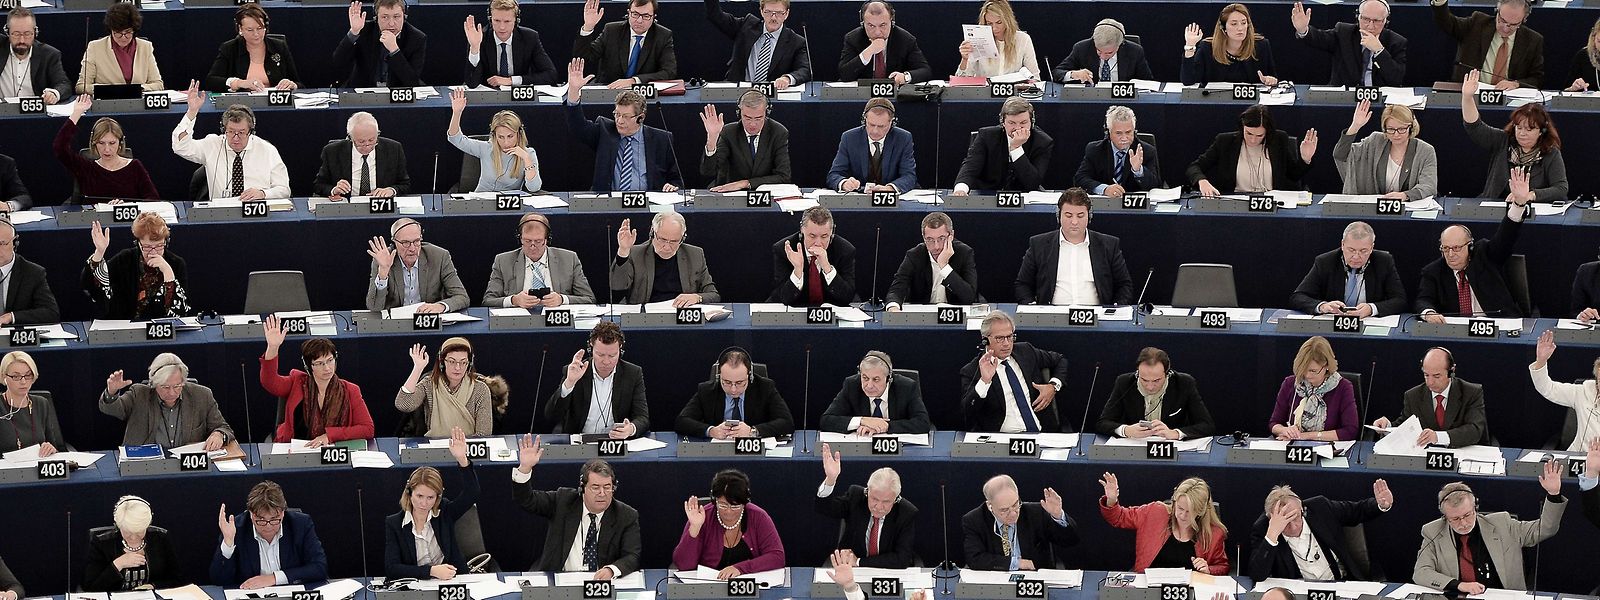 Mitglieder des Europäischen Parlaments bei einer Plenarsitzung.